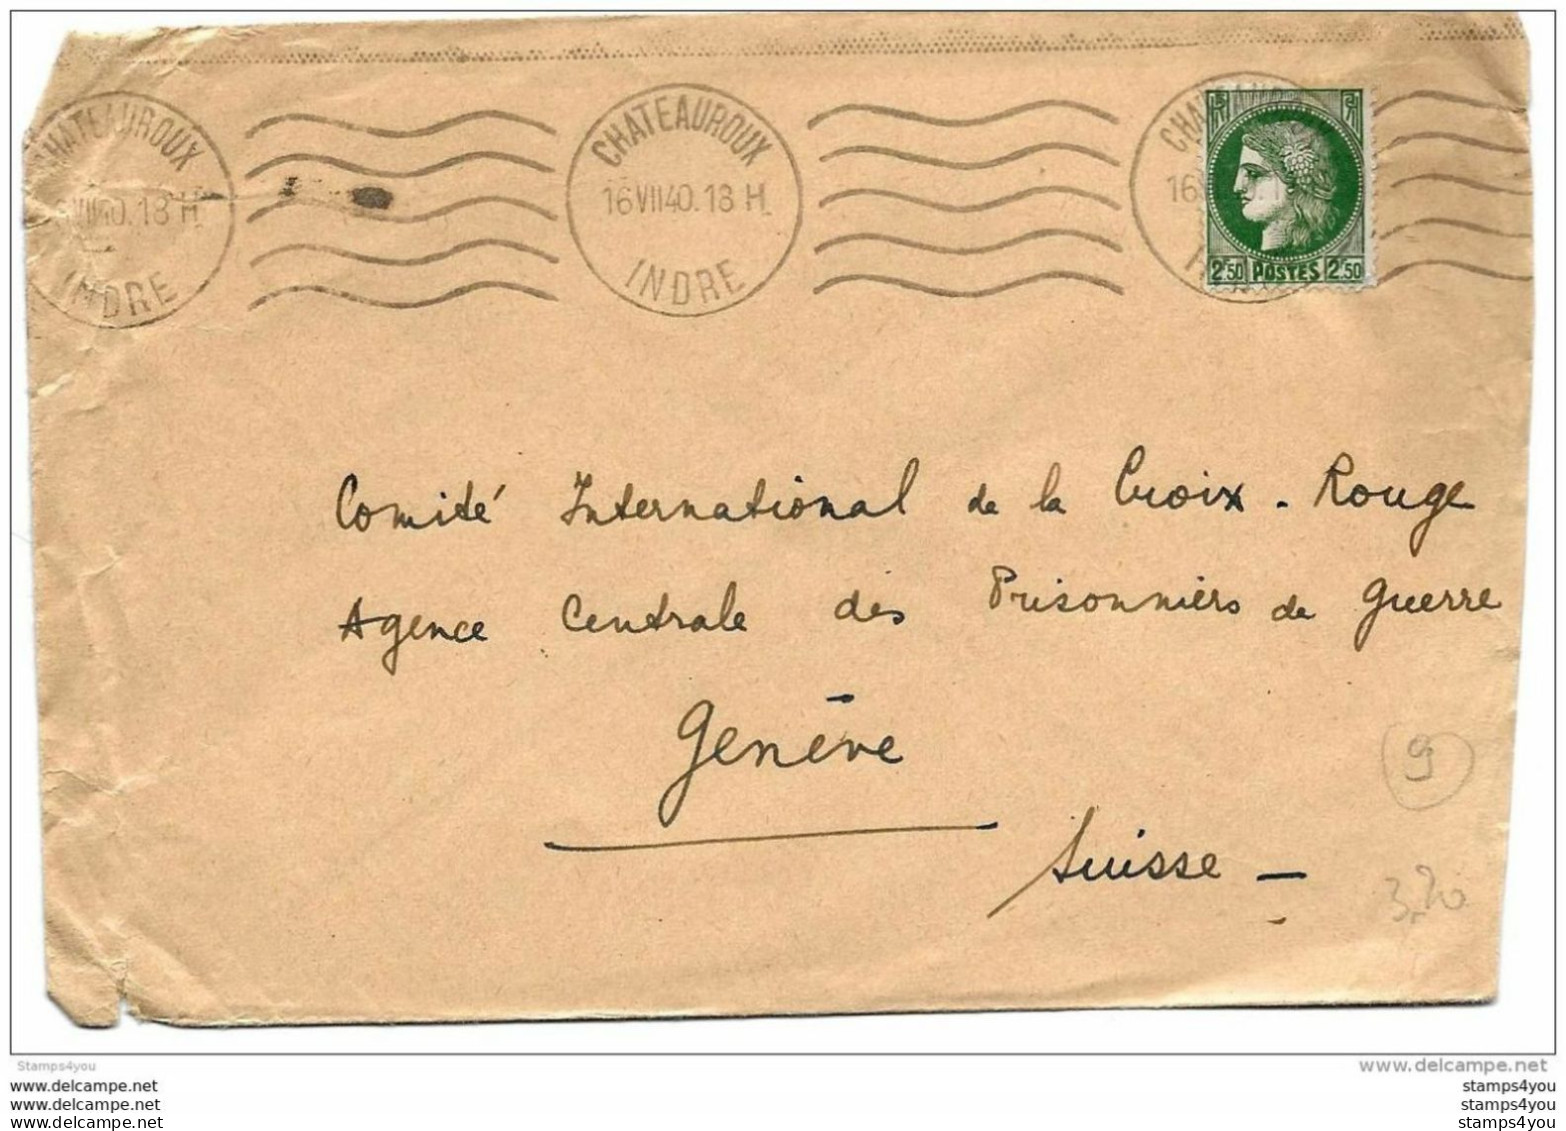 43-10 - Enveloppe Envoyée De Chateauroux/Indre Au Service Prisonniers De Guerre/Croix Rouge/Genève 1940 - 2. Weltkrieg